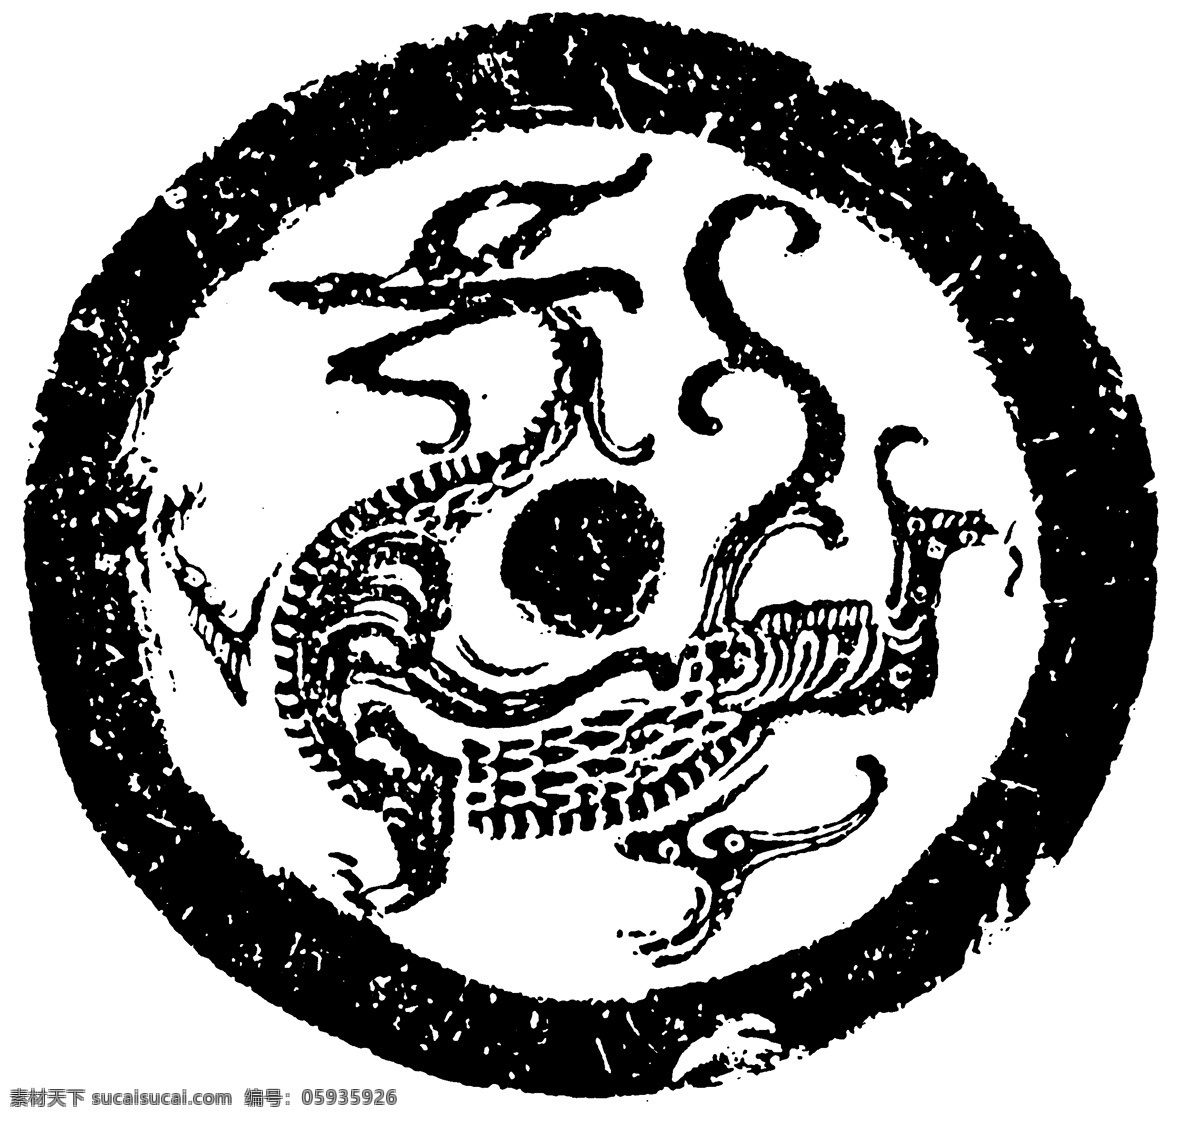 瓦当图案 秦汉时期图案 中国传统图案 图案109 图案 设计素材 瓦当纹饰 装饰图案 书画美术 白色